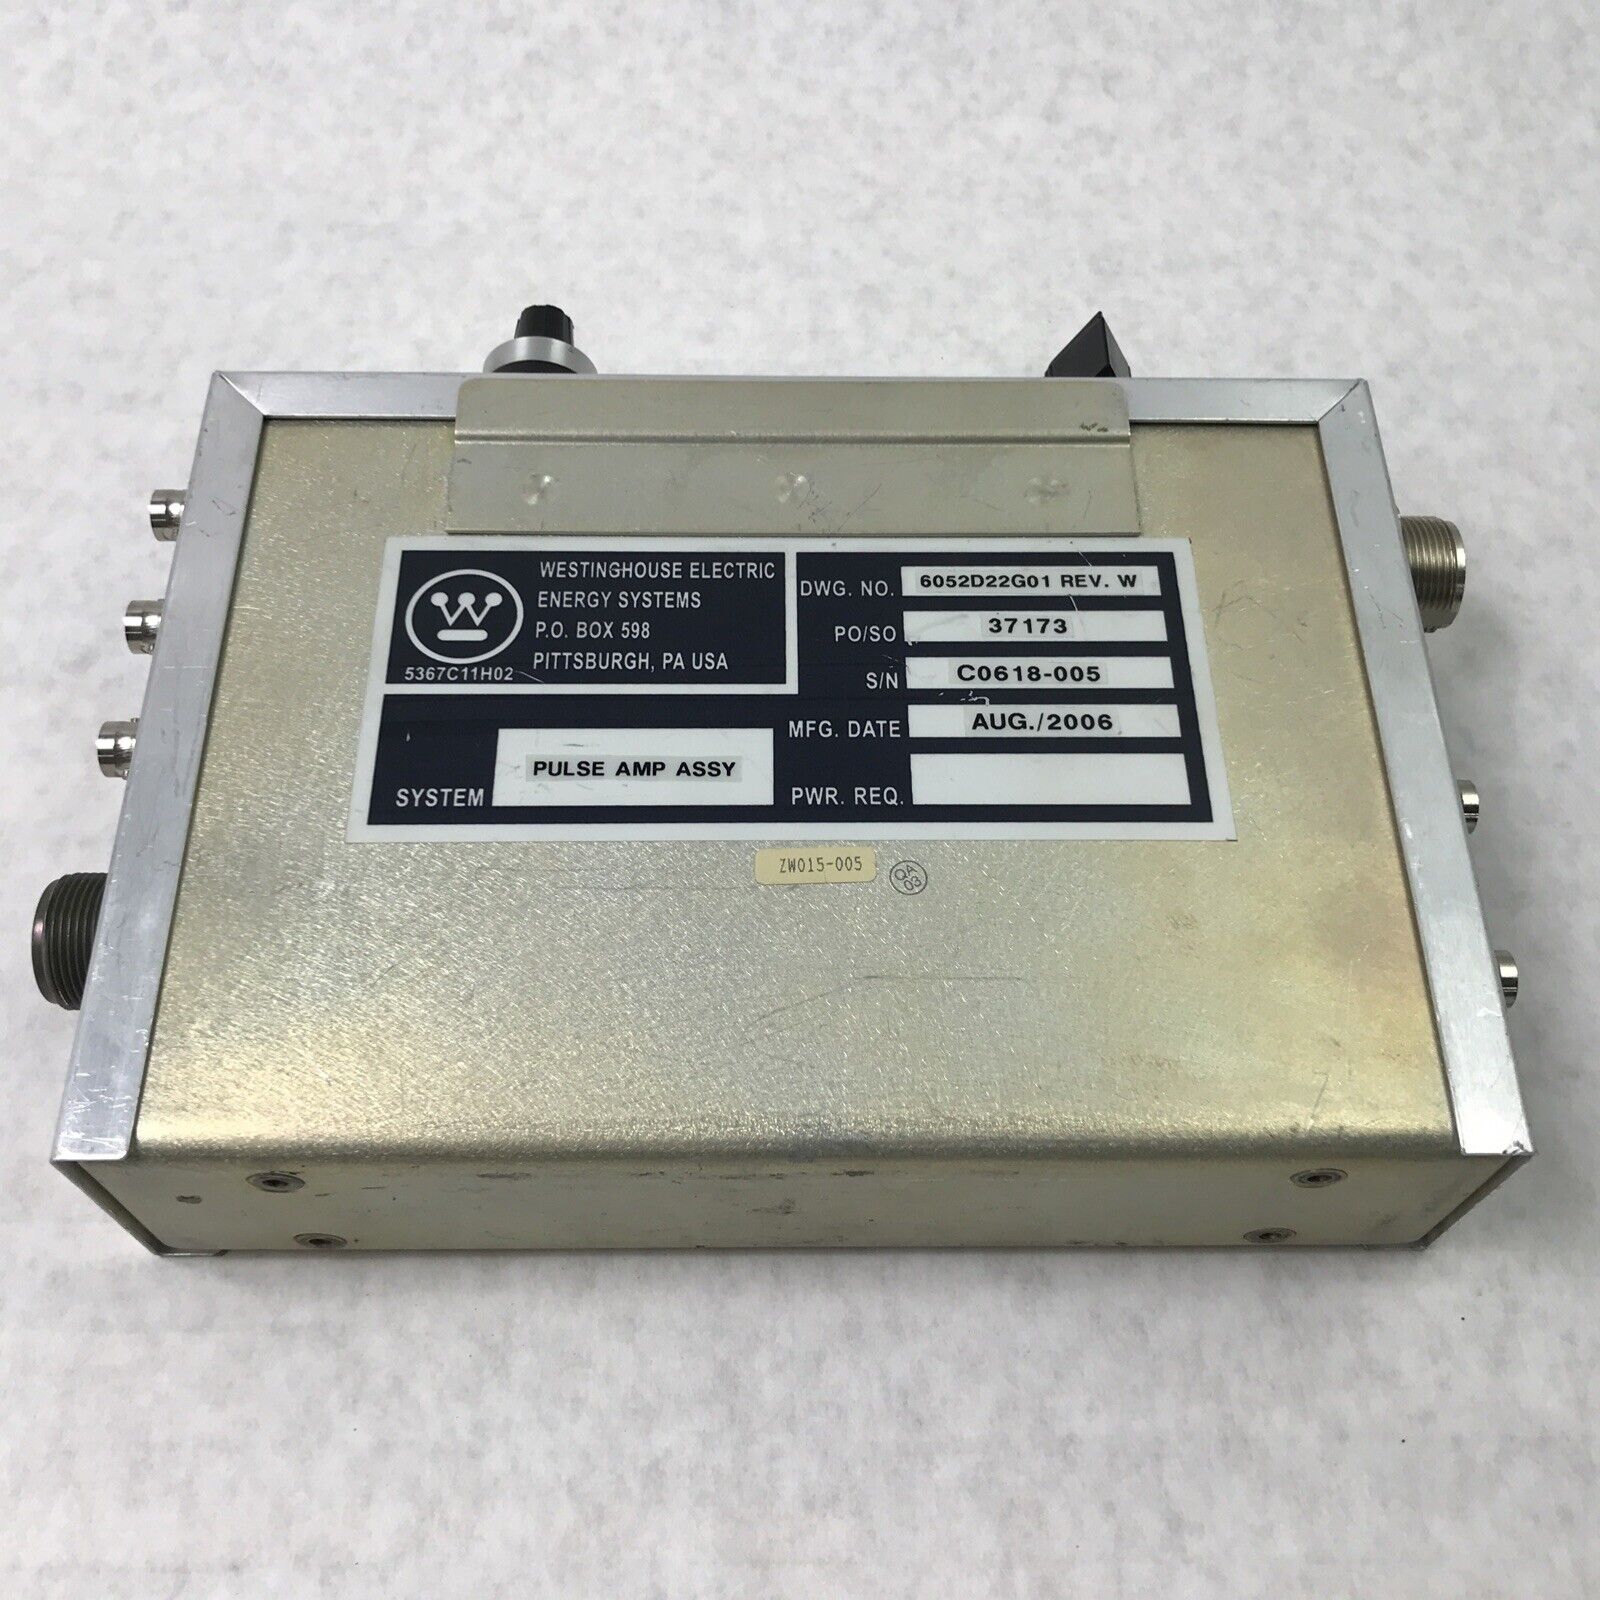 Westinghouse 6052D22G01 Pulse Amplifier